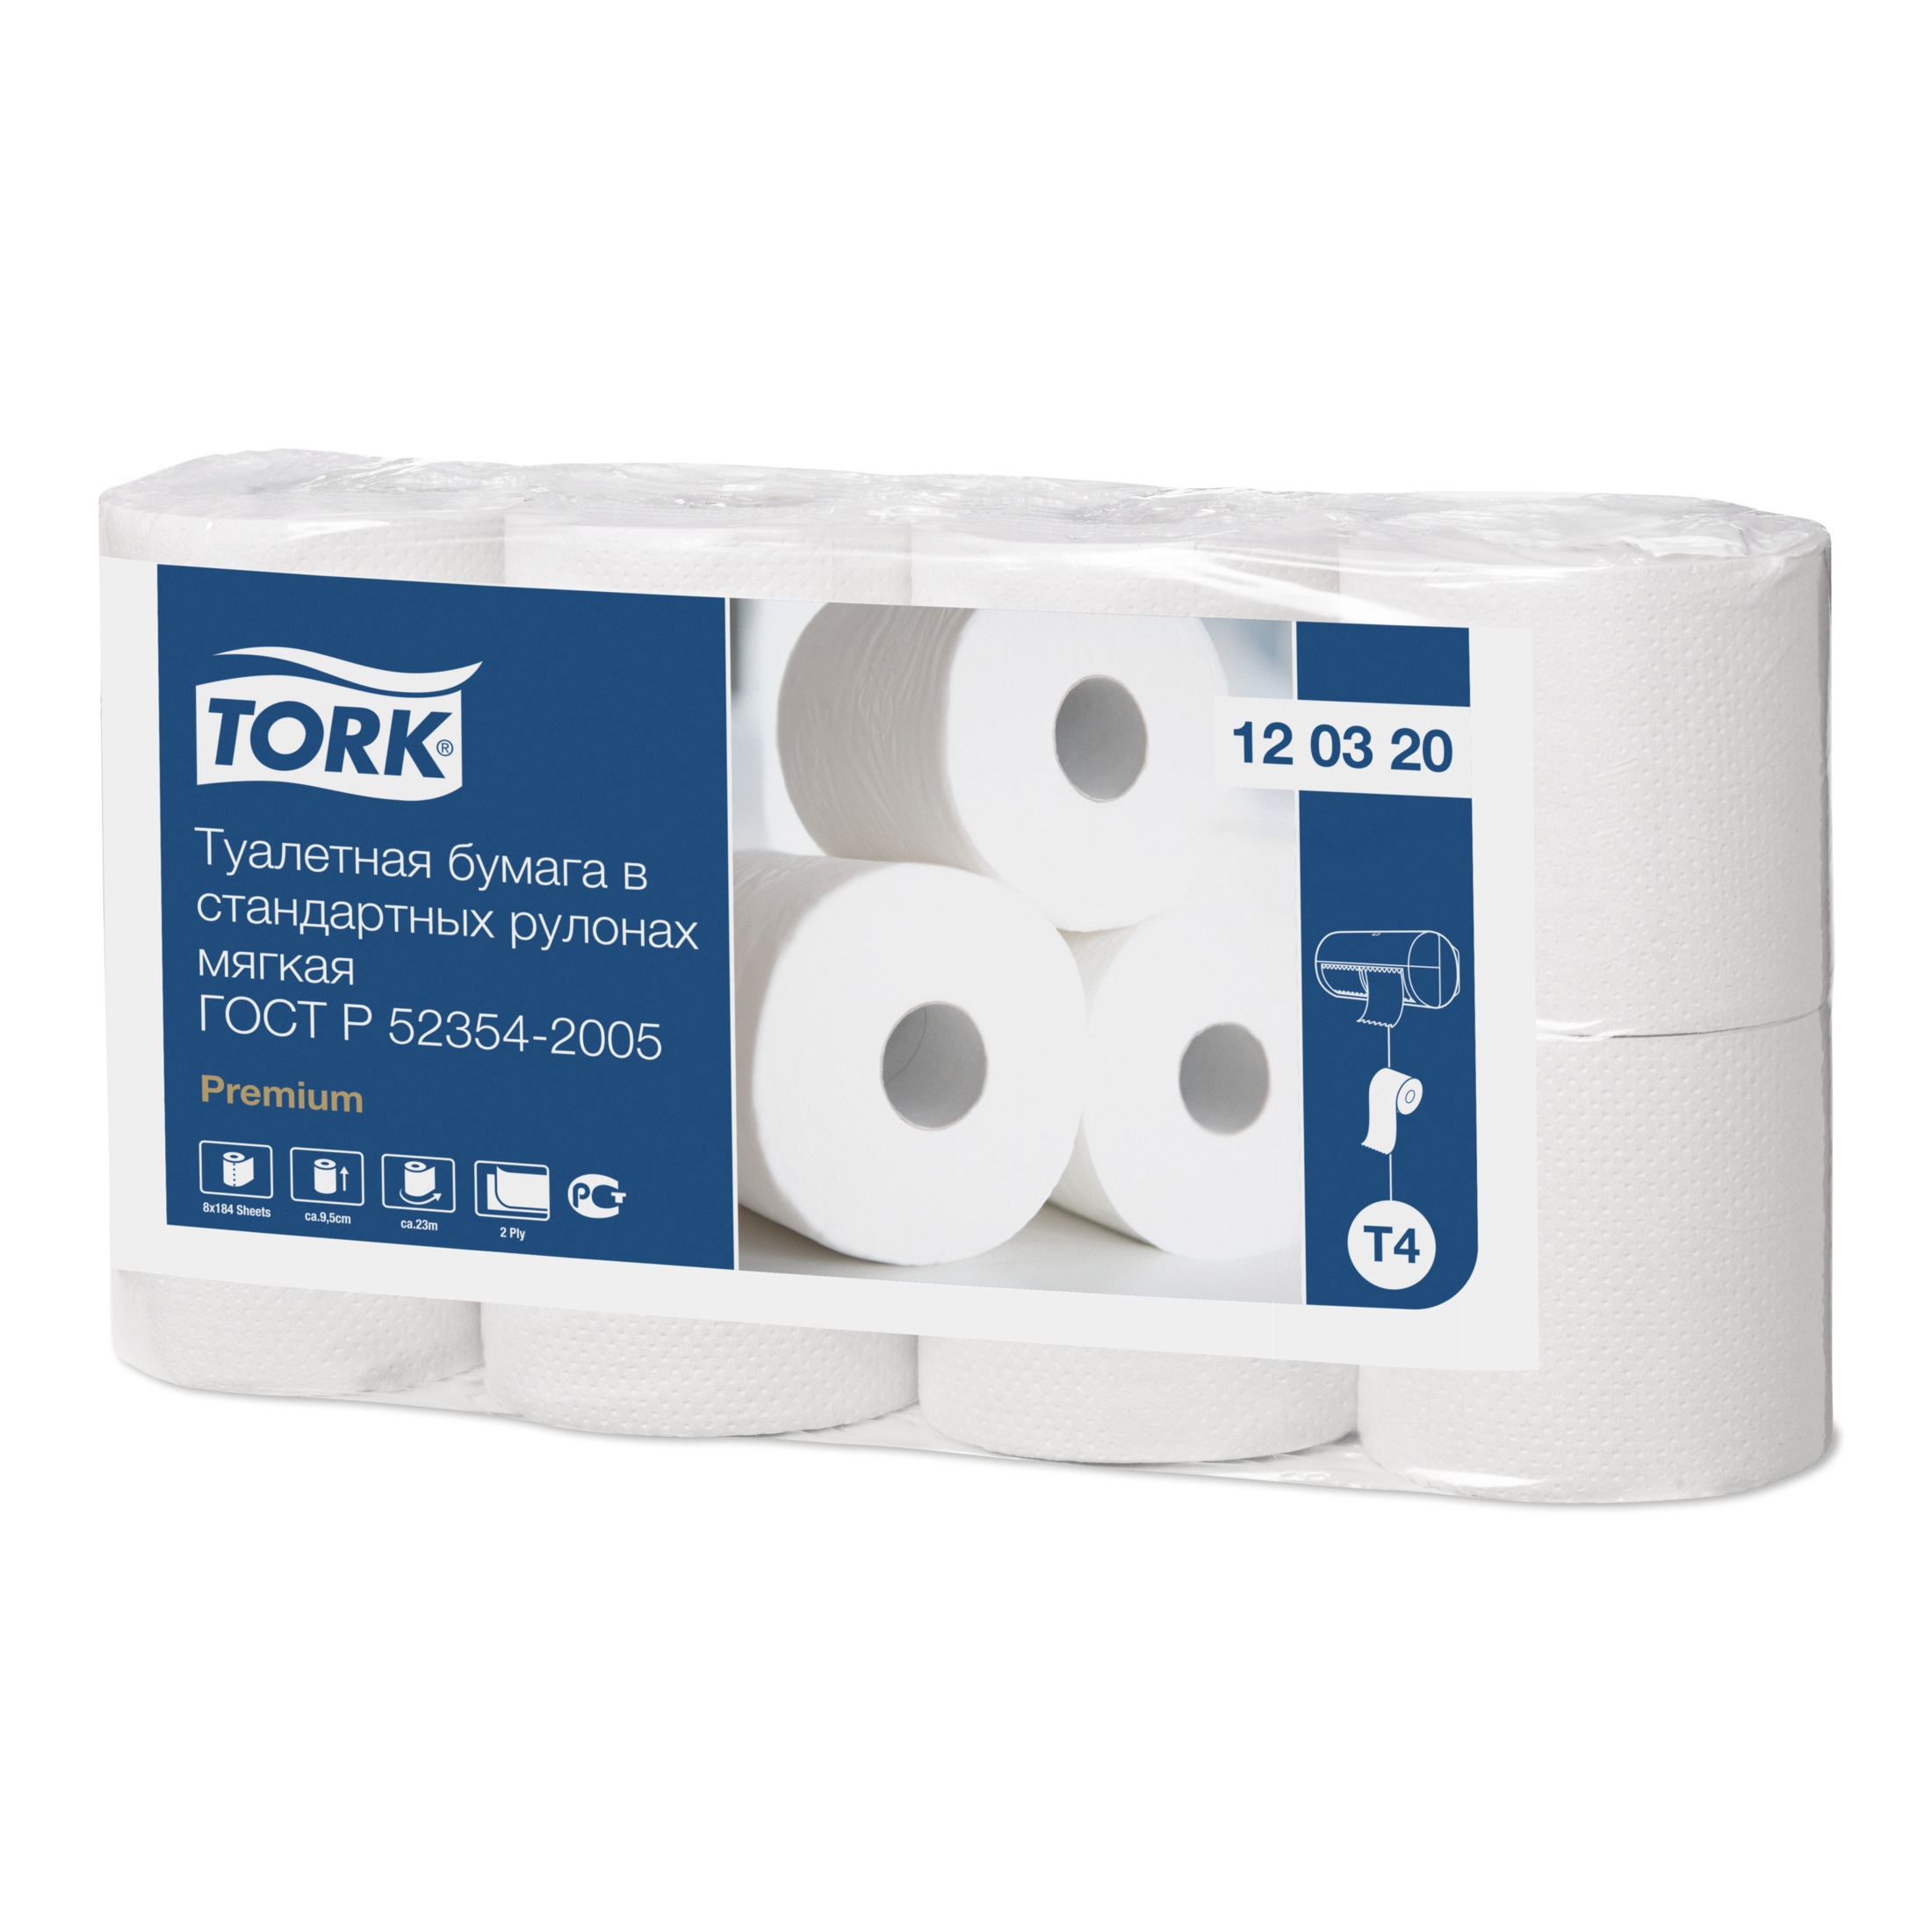 Tork туалетная бумага в стандартных рулончиках мягкая 120320